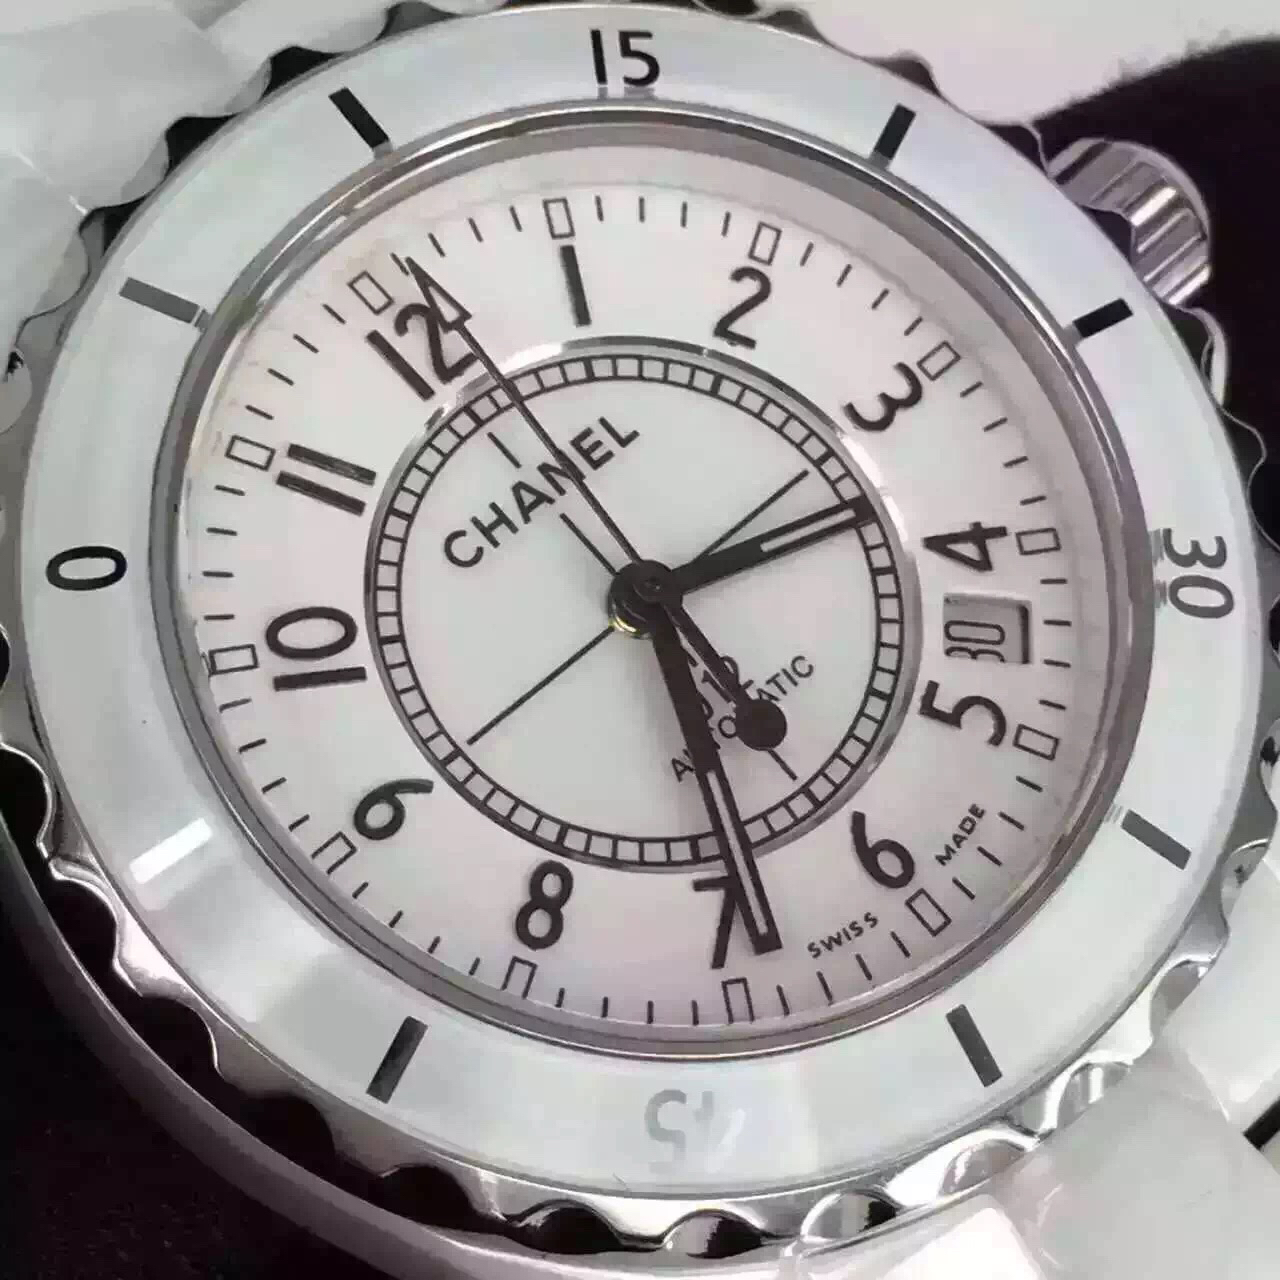 2022122608171493 - 復刻手錶香奈兒手錶多少錢 香奈兒J12繫列H1626自動機械中性手錶￥2580